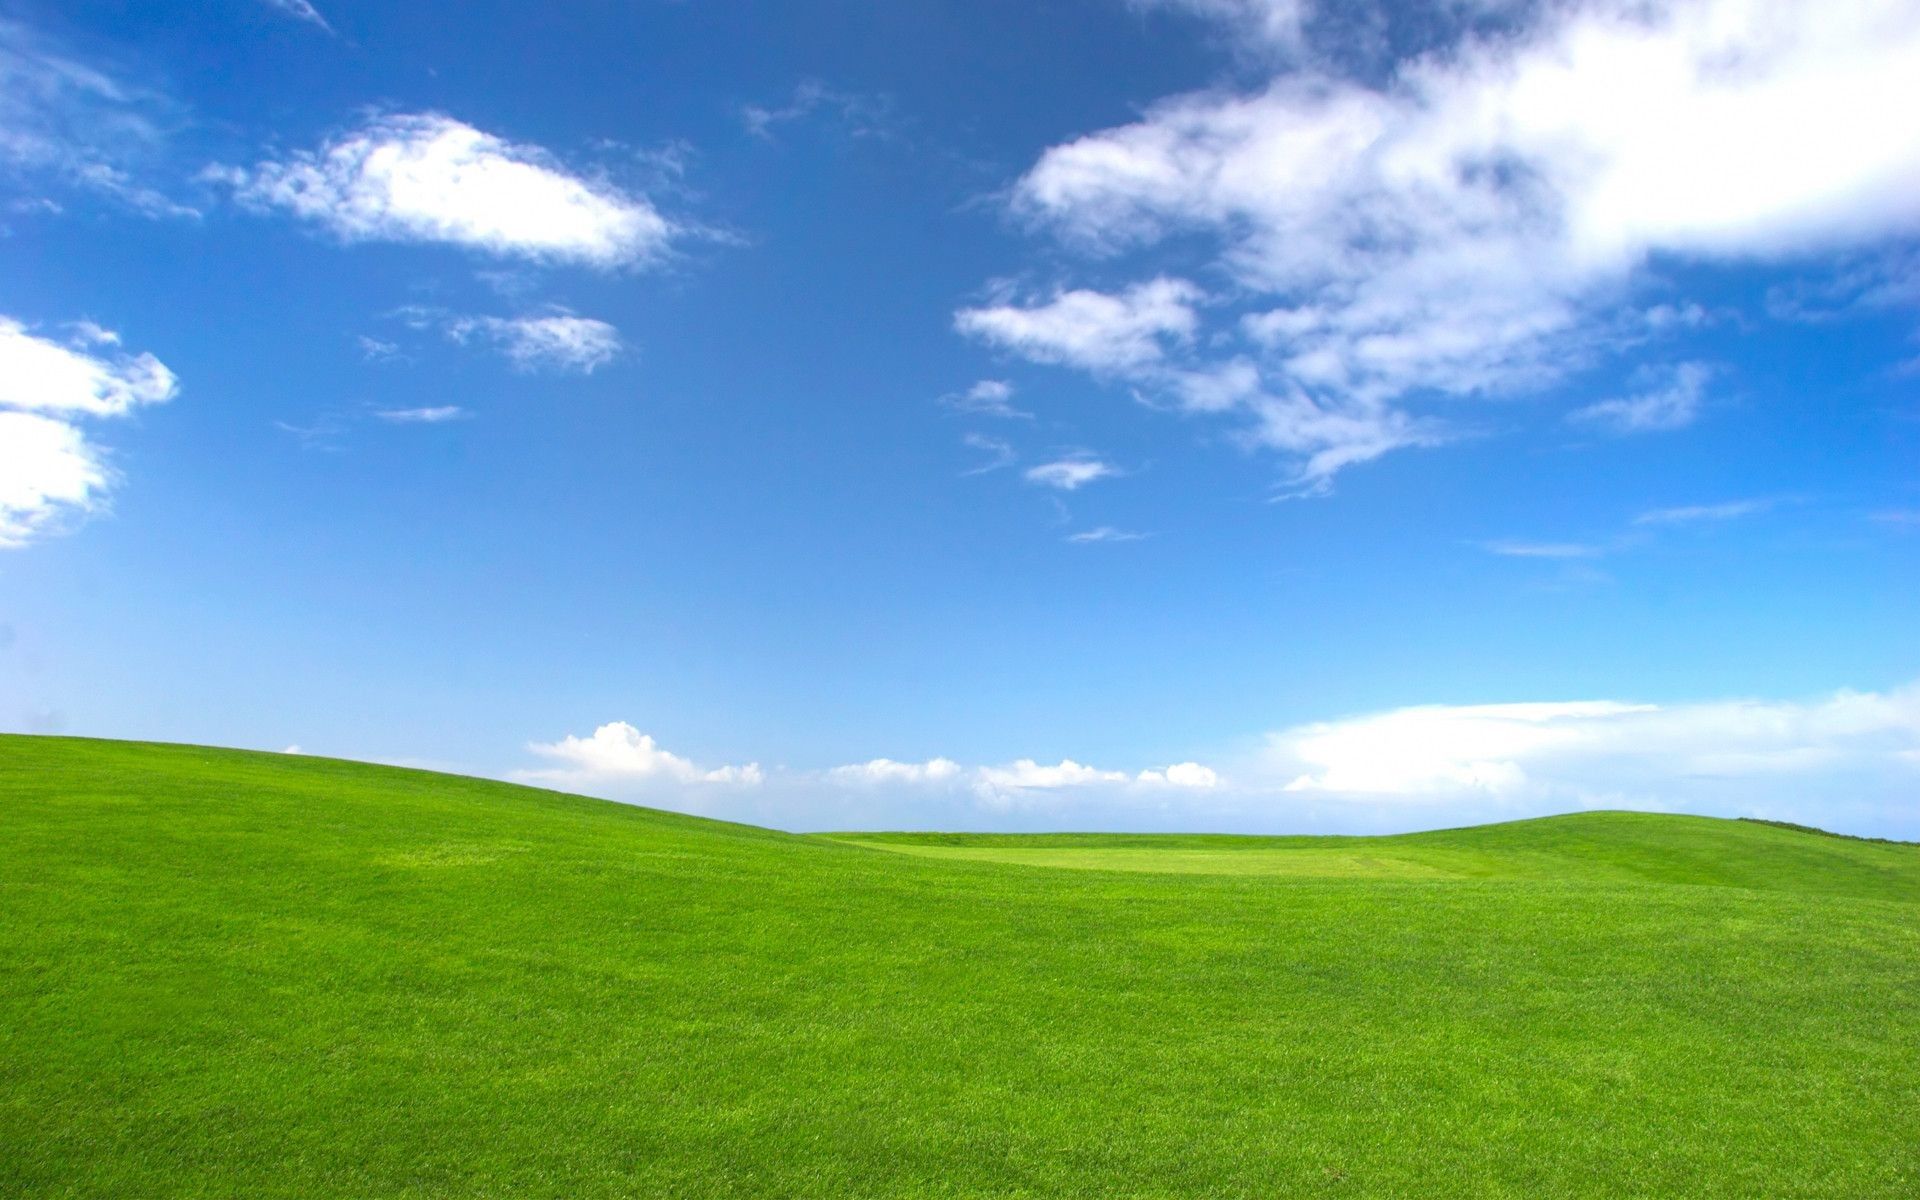 Bạn muốn tìm một bộ sưu tập hình nền Windows XP đẹp và chất lượng nhưng không muốn bỏ ra nhiều chi phí? Windows XP Desktop Wallpapers là giải pháp hoàn hảo dành cho bạn. Hầu hết các tùy chọn hình nền đều miễn phí, chất lượng đảm bảo và hợp với nhiều phong cách khác nhau. Tải ngay về và trang trí cho máy tính của bạn thêm sinh động.